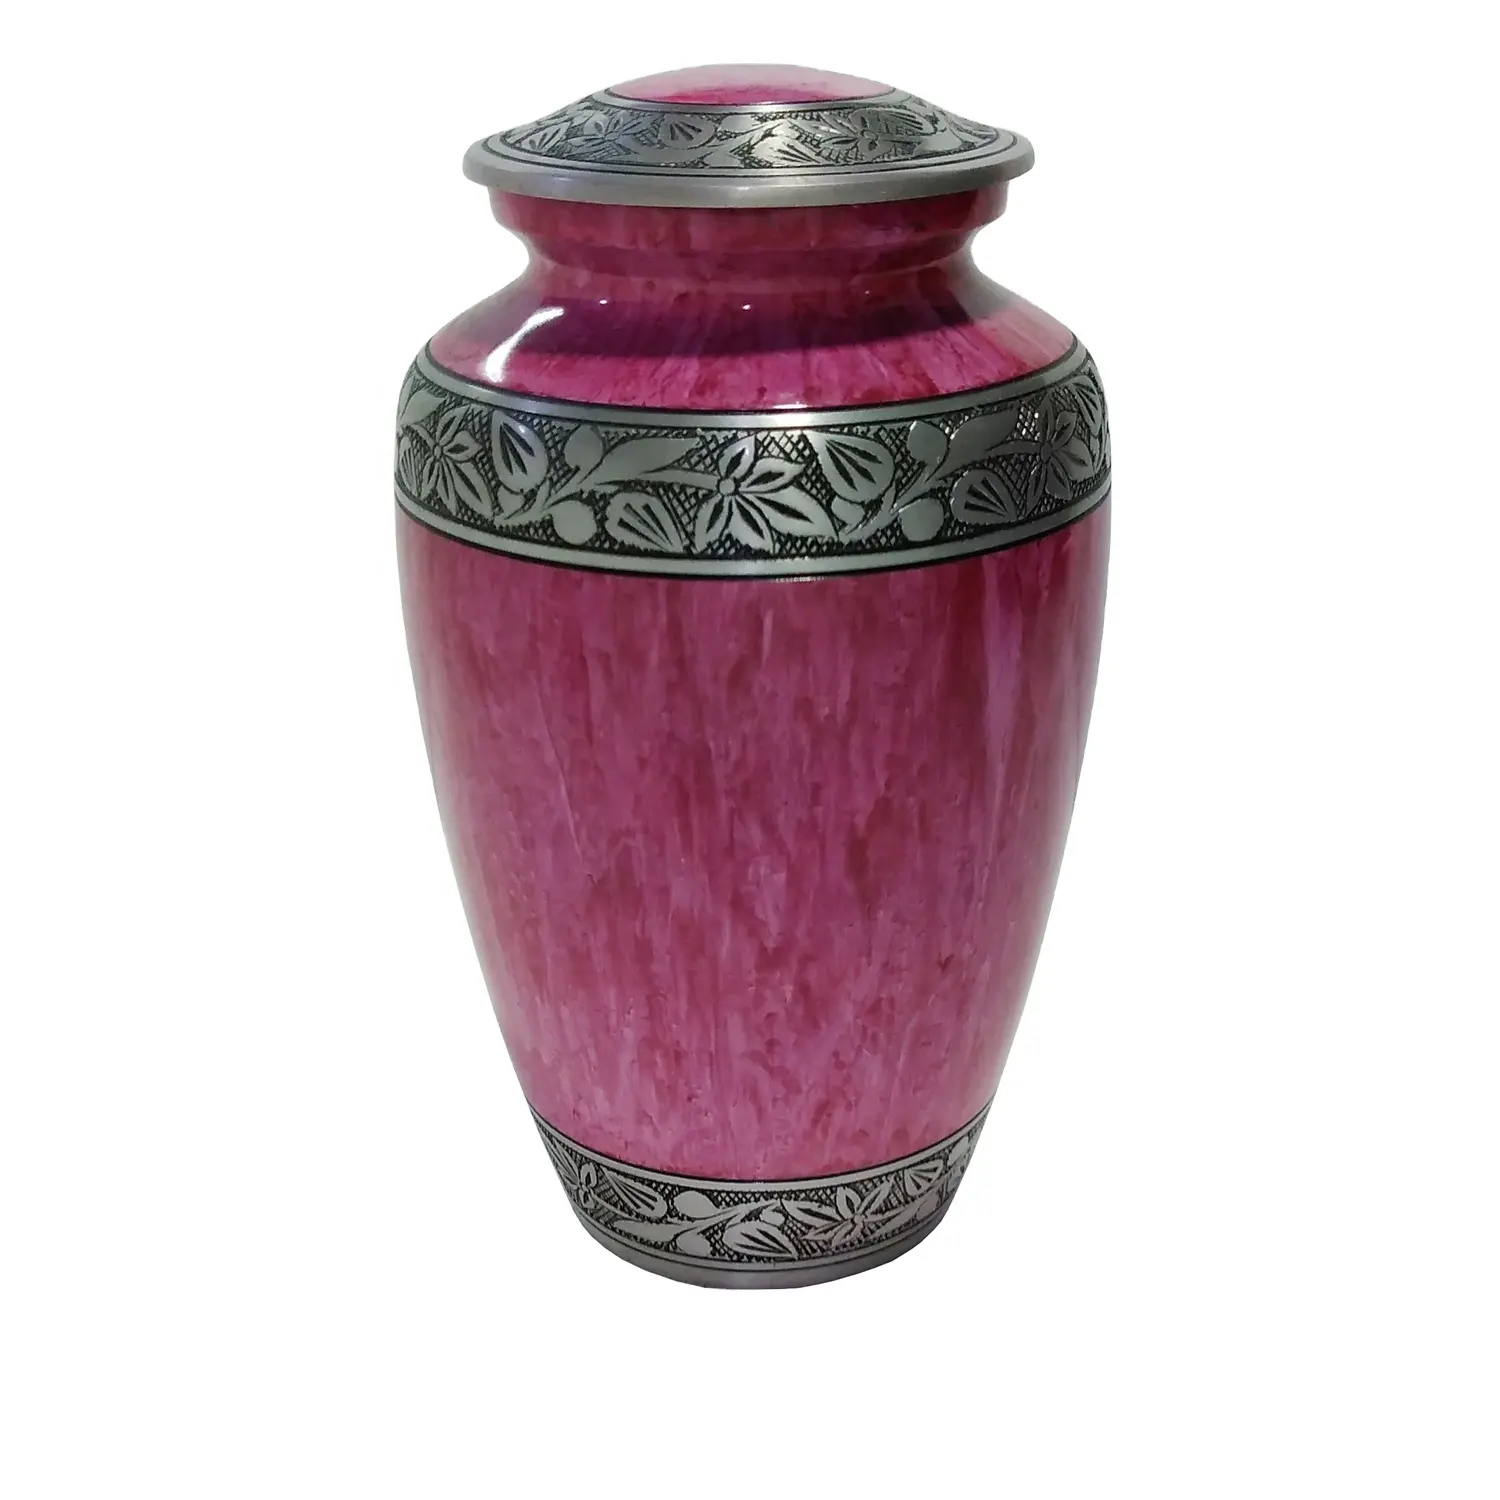 Urno funeral raro e design exclusivo, urso de cremação de alumínio adulto gravado com mármore rosa terminado para venda